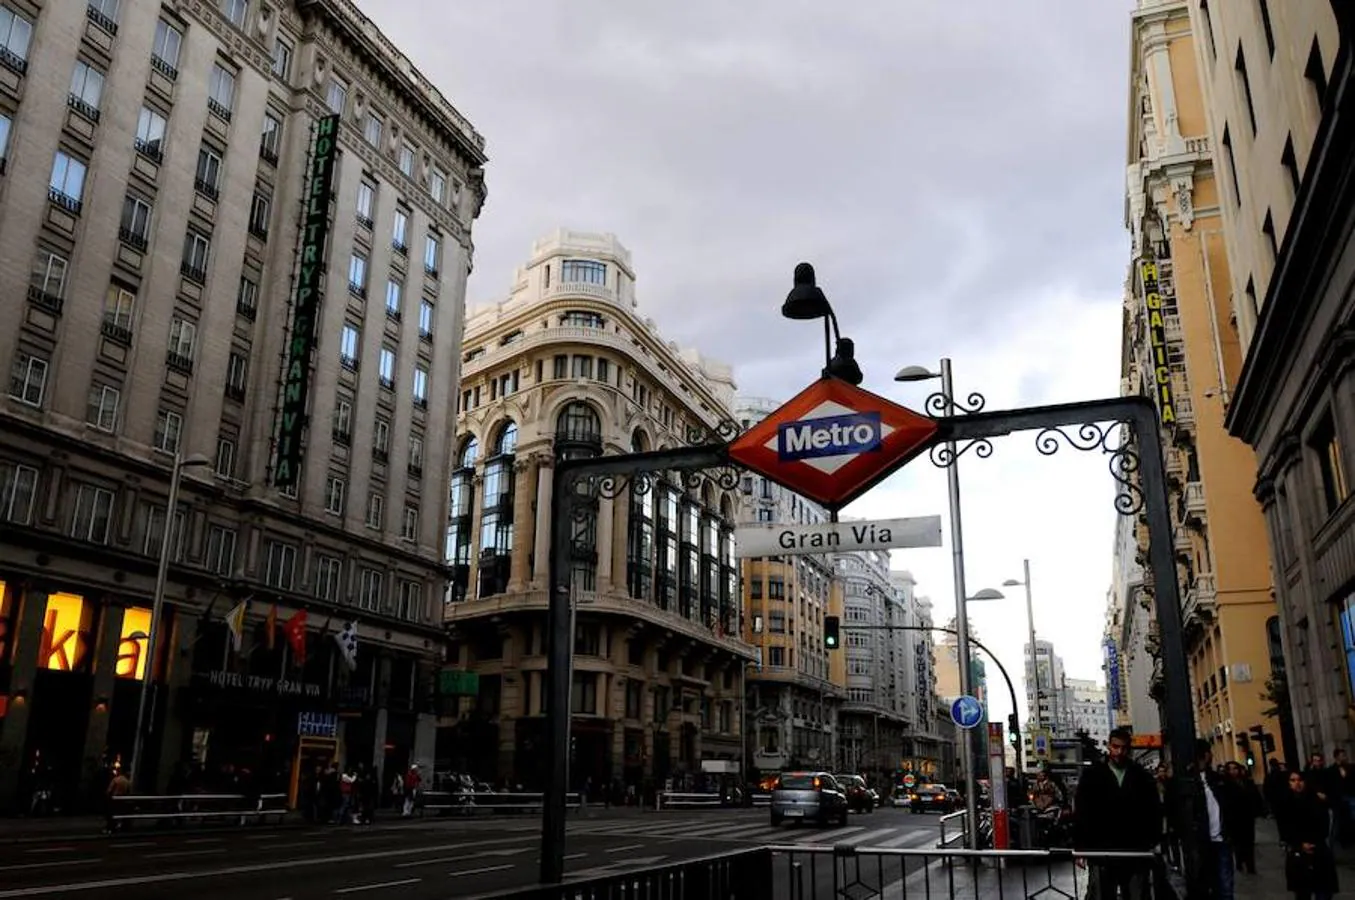 Madrid | Para encontrar alguna ciudad española tenemos que bajar hasta el puesto número 34 de la lista. Ahí aparece Madrid. La capital de España, según el informe, es además la décima que más puestos ha escalado en la clasificación respecto a 2017. 